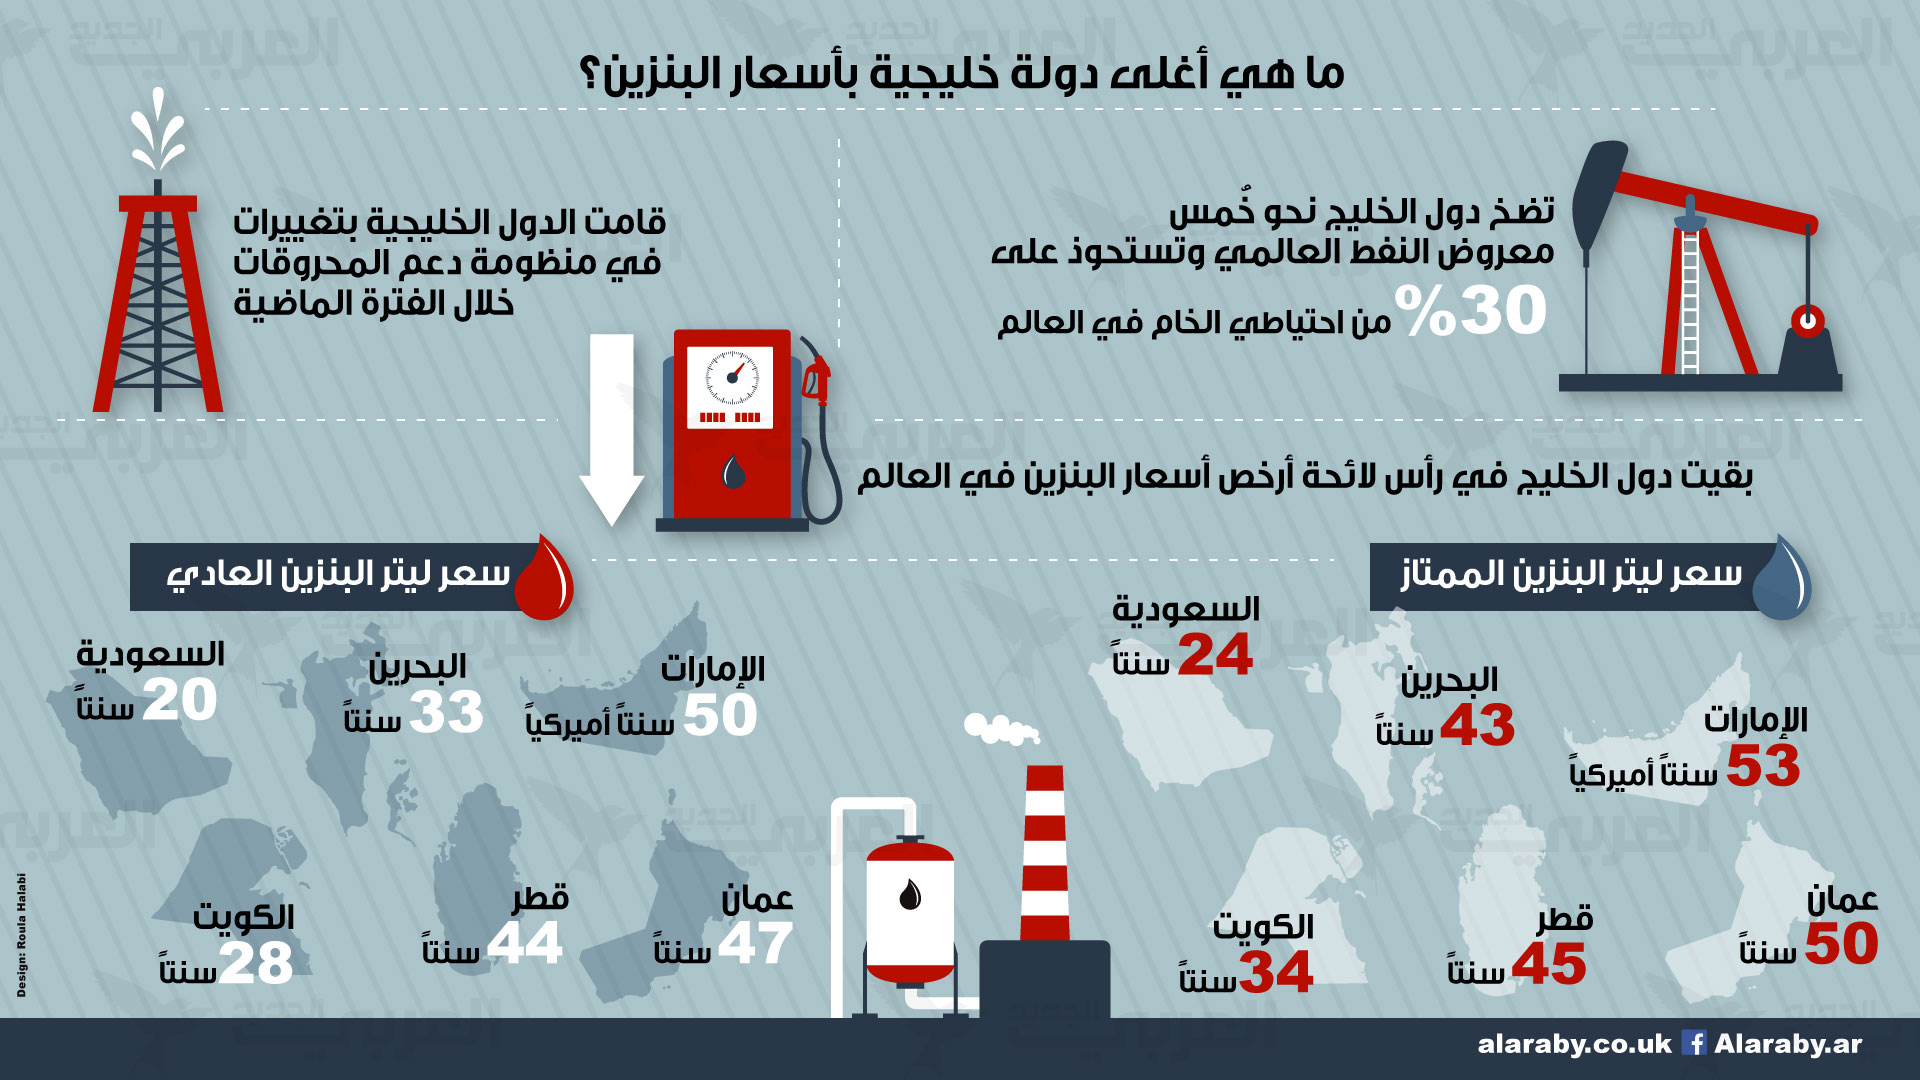 اسعار البنزين في الخليج